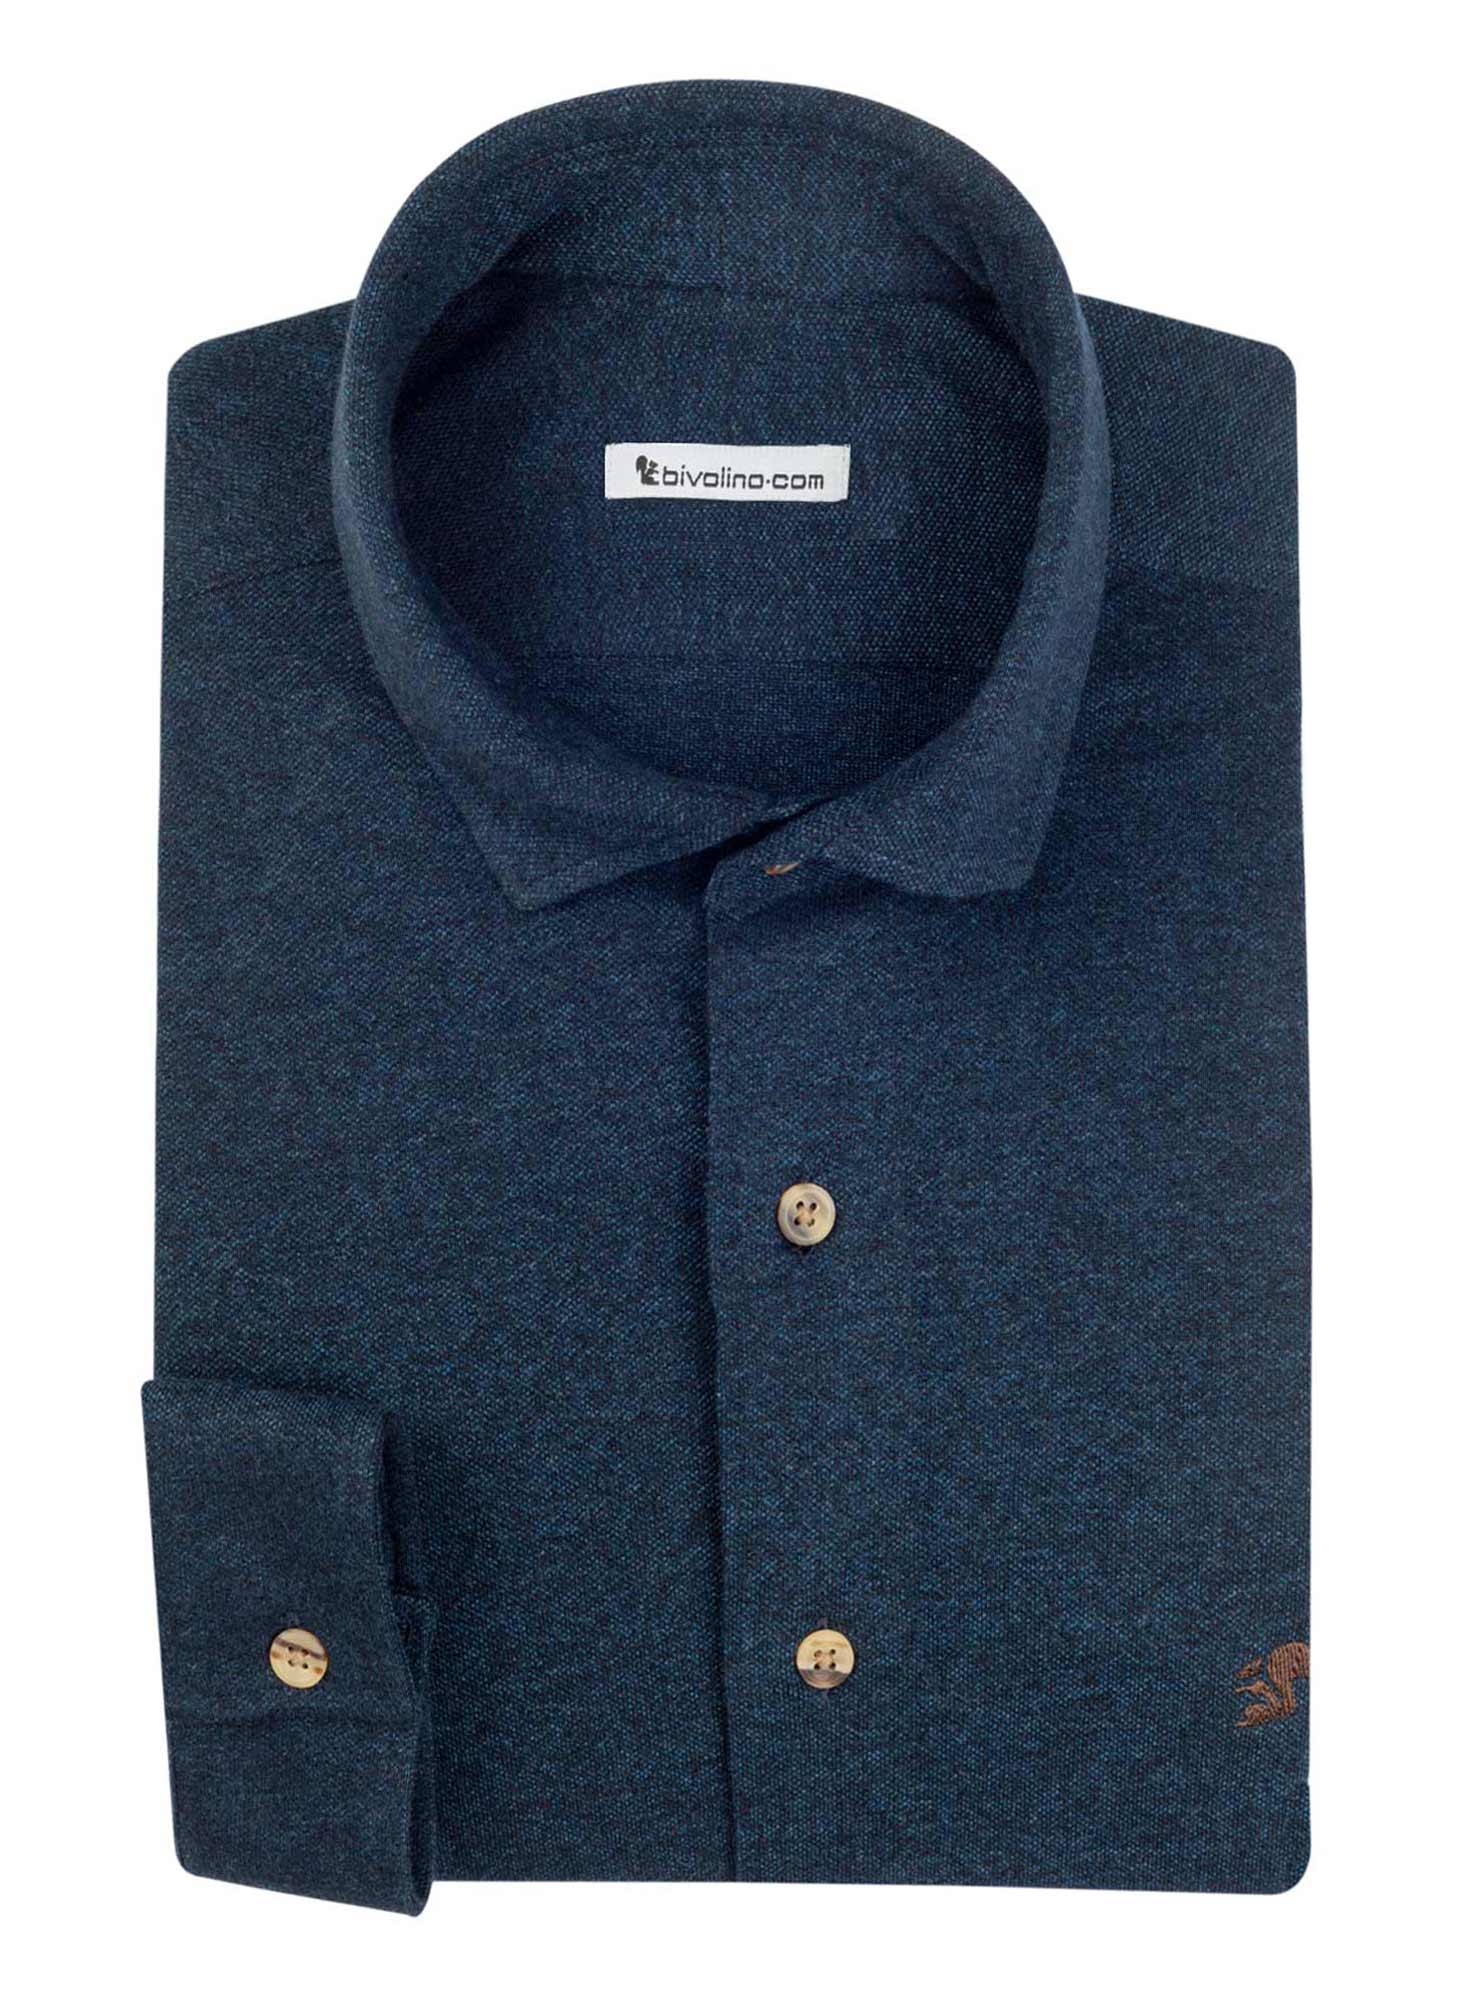 PALERMO - Jersey de piqué 100% algodón azul marino camisa de hombre - JERSILI 4